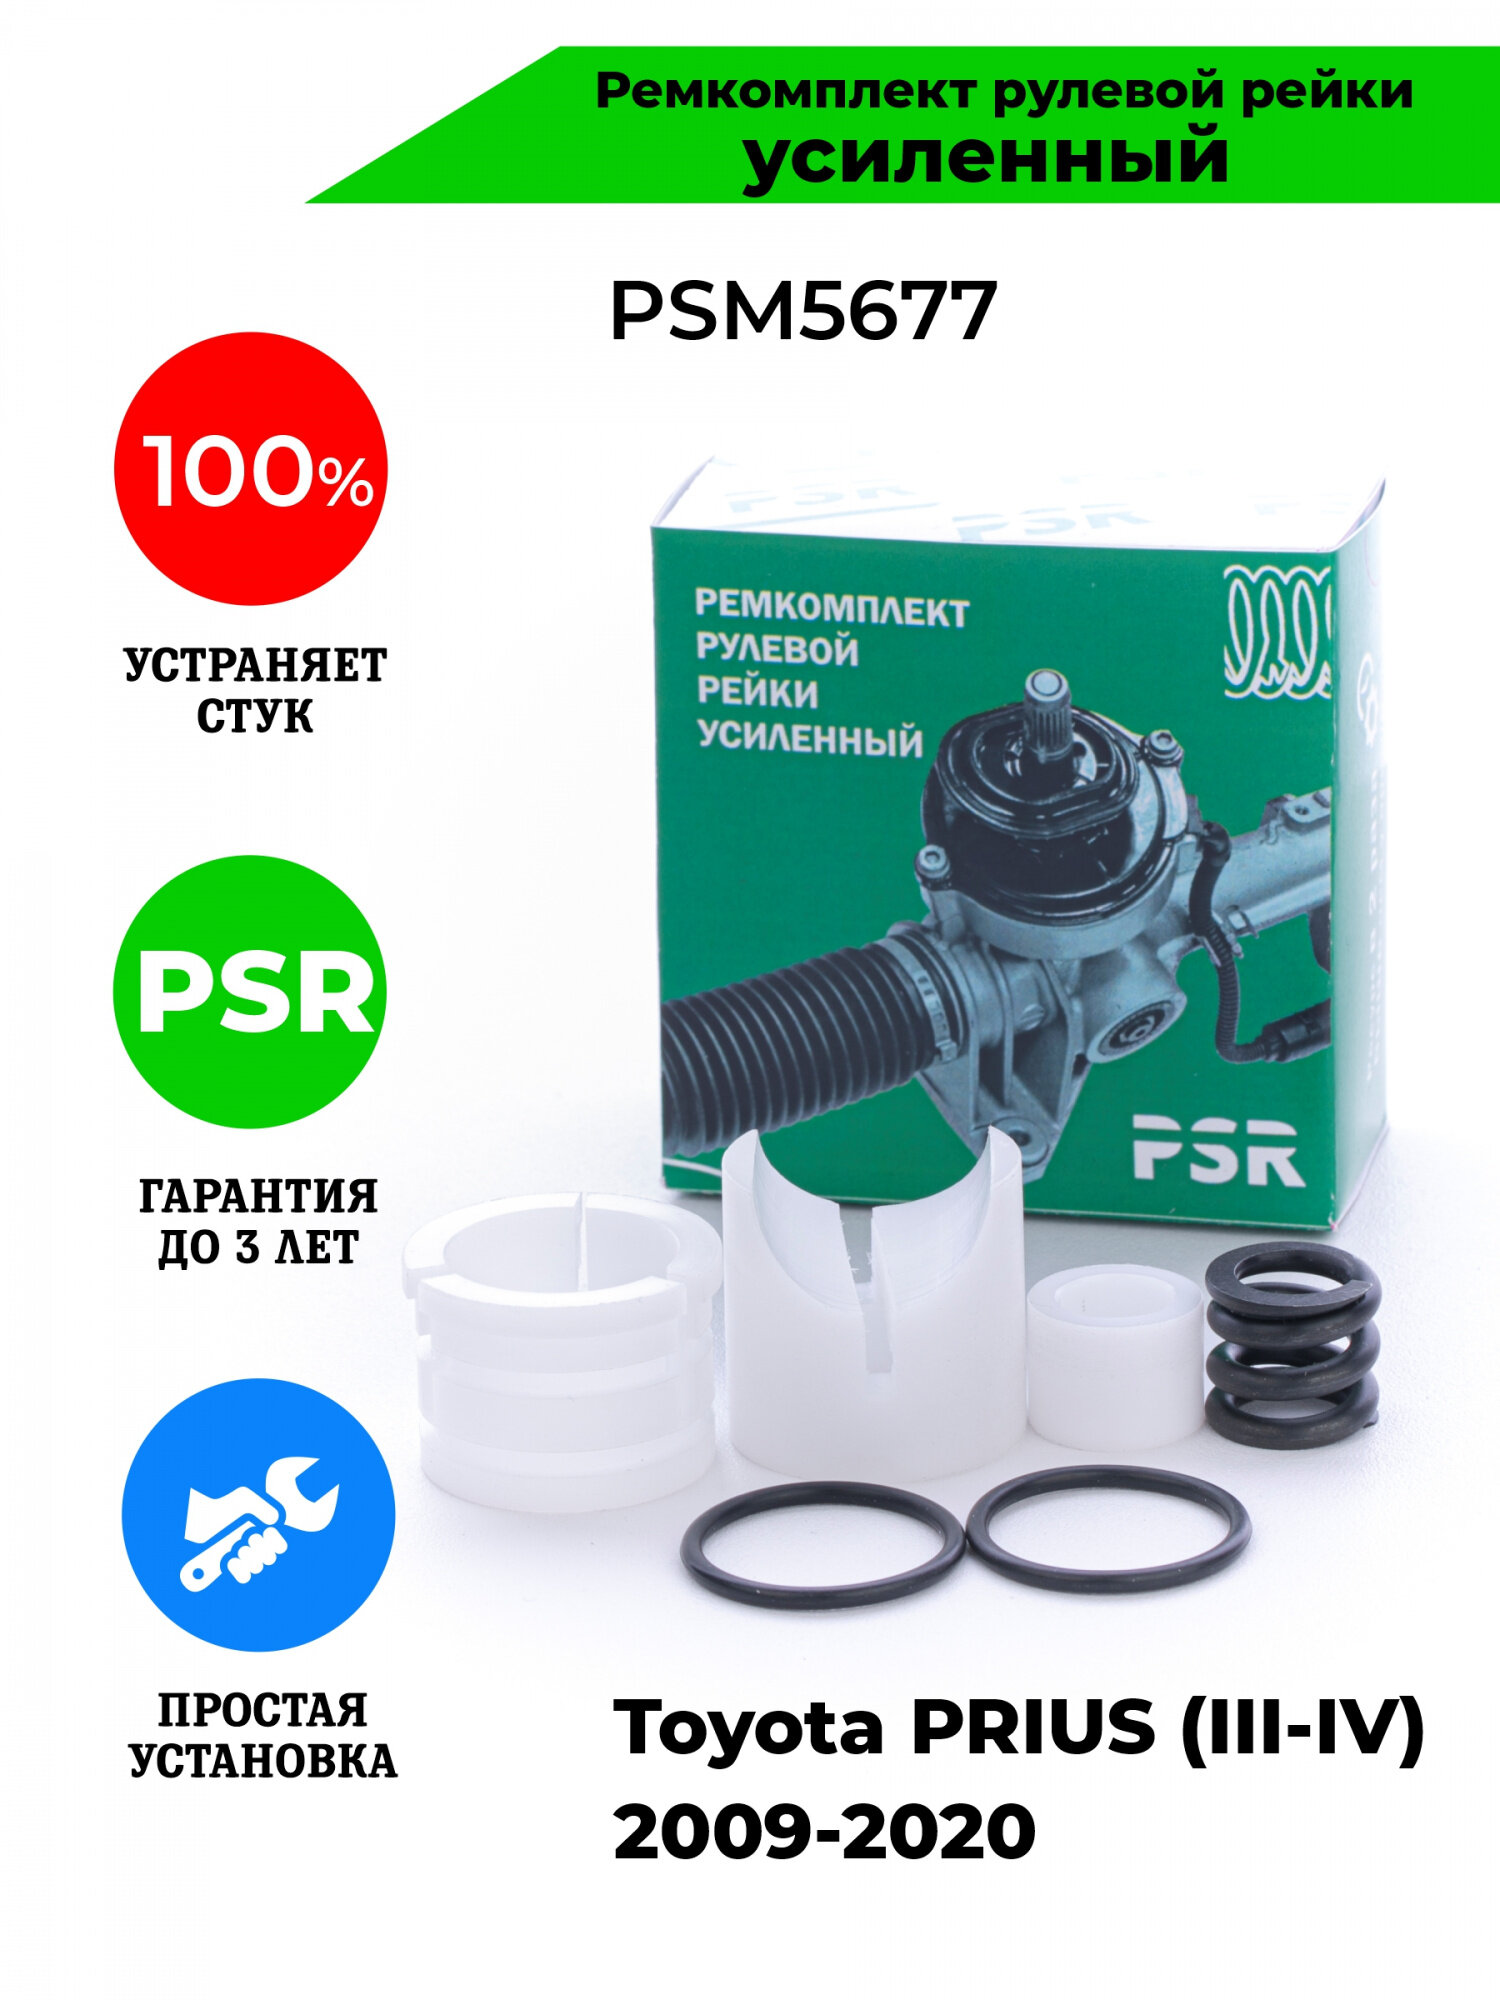 Ремкомплект рулевой рейки для Тойота Приус Toyota PRIUS (III-IV) 2009-2020 Поджимная и опорная втулка рулевой рейки